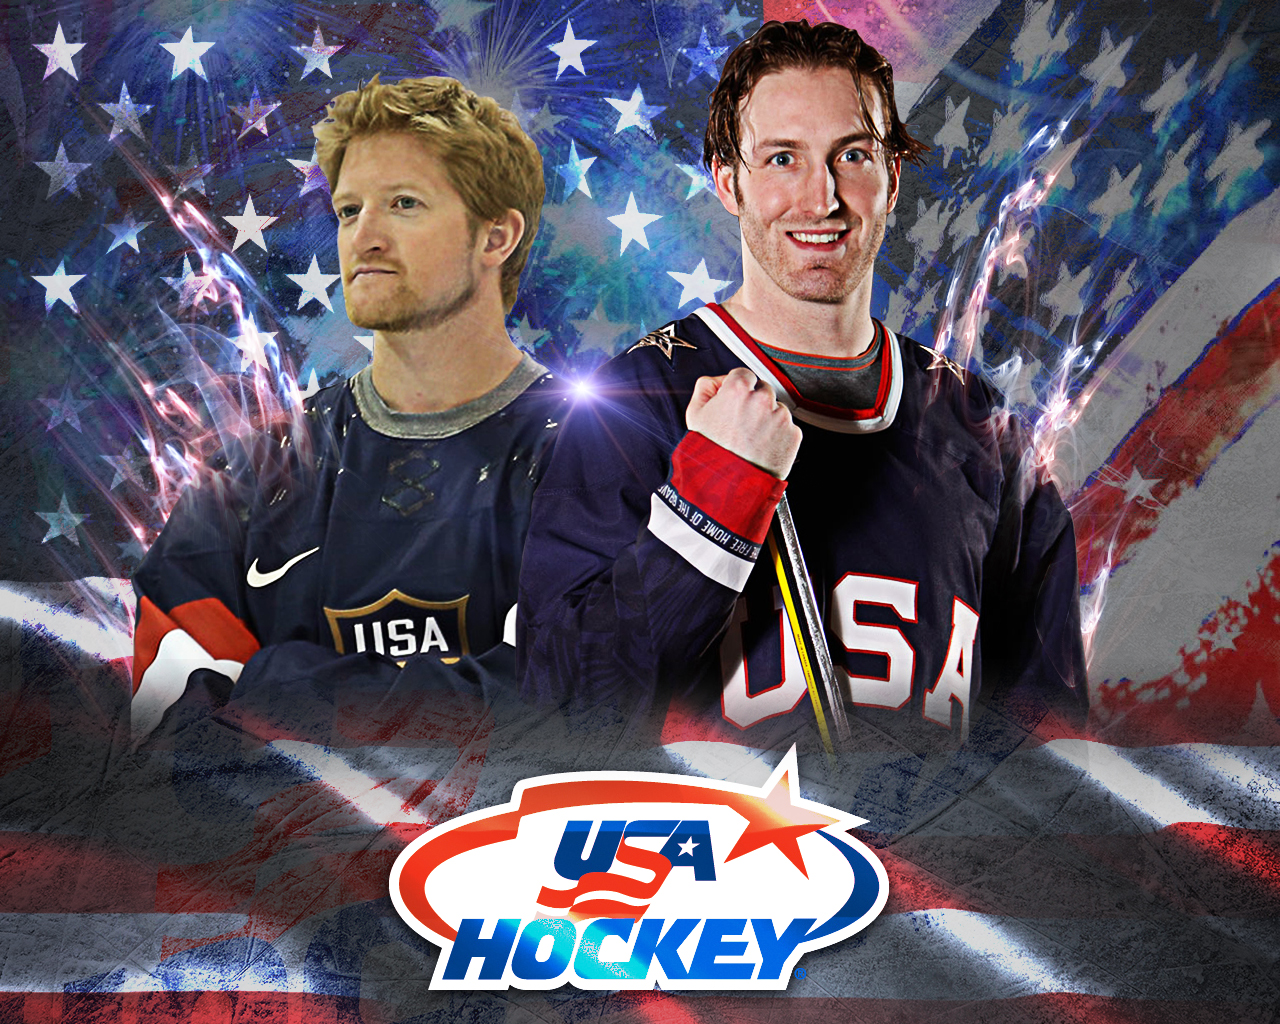 USA Hockey Wallpaper featuring Penguins defensemen Paul Martin and